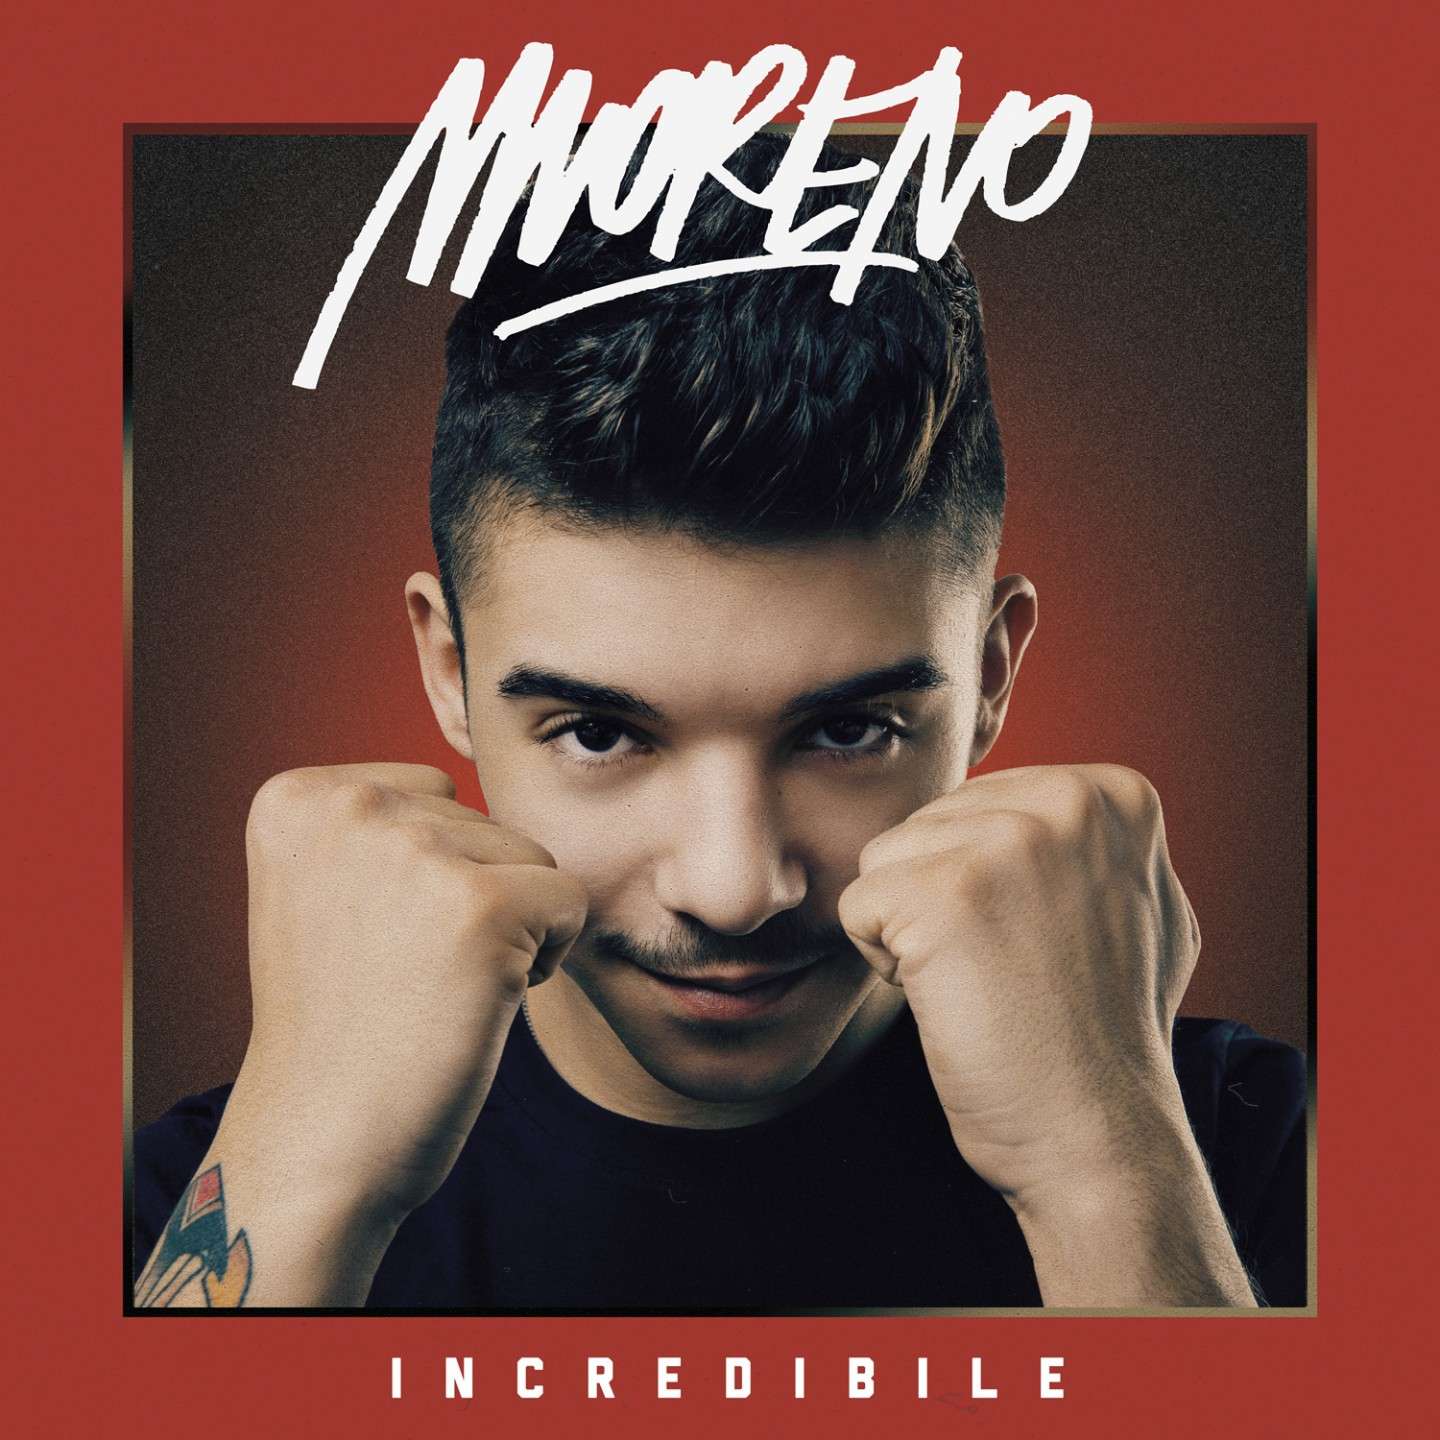 Copertina dell'album di Moreno